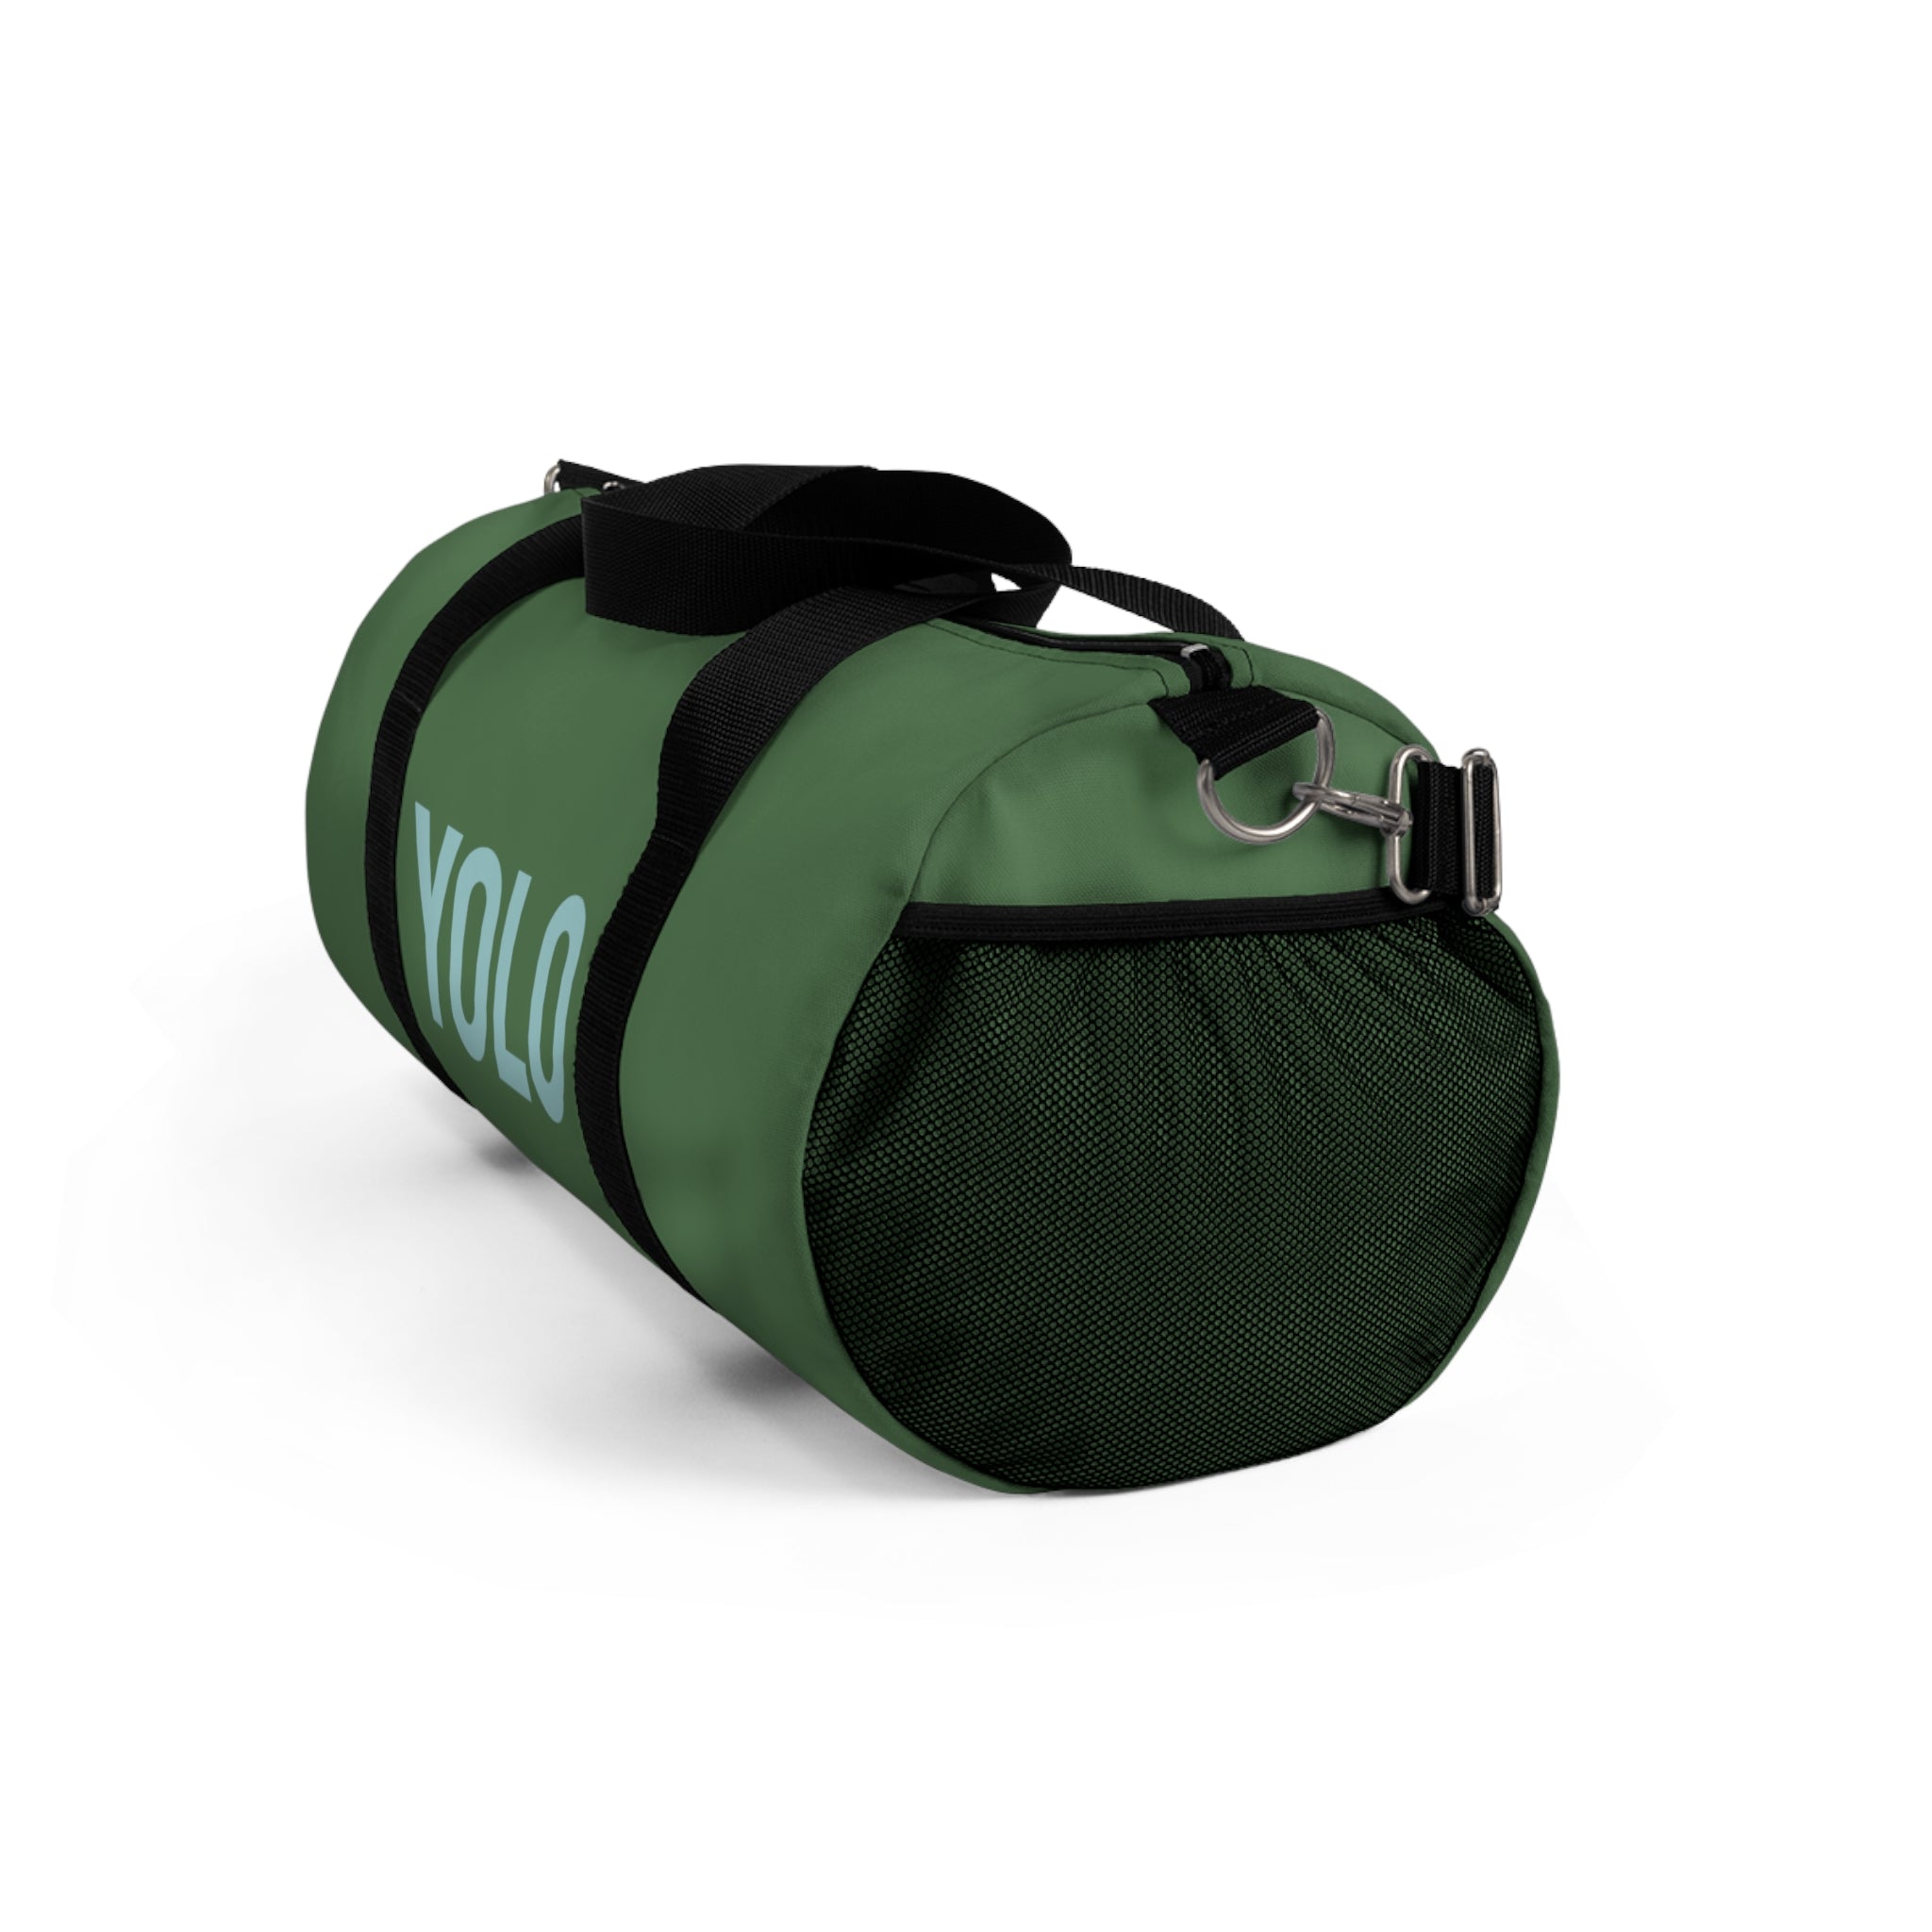 Yolo Duffle Bag (Green)